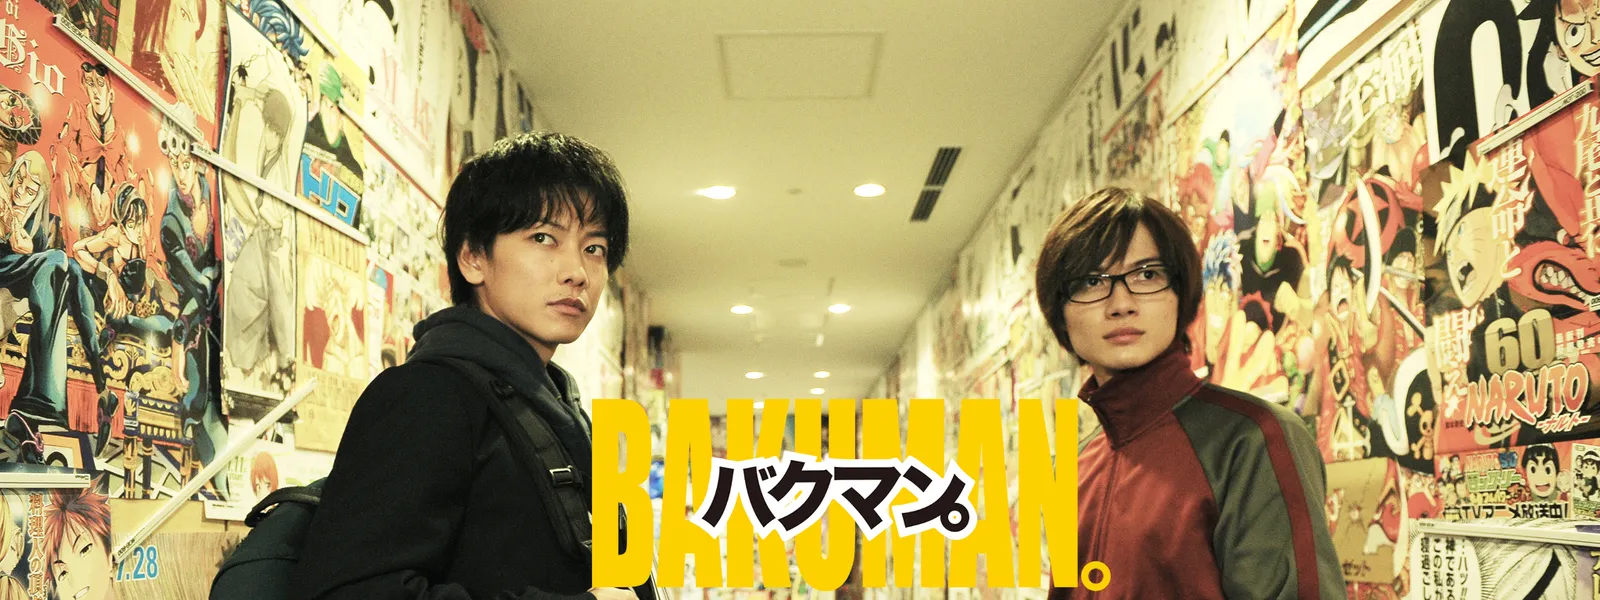 バクマン 映画 無料 ピクチャー 日本の無料ブログ